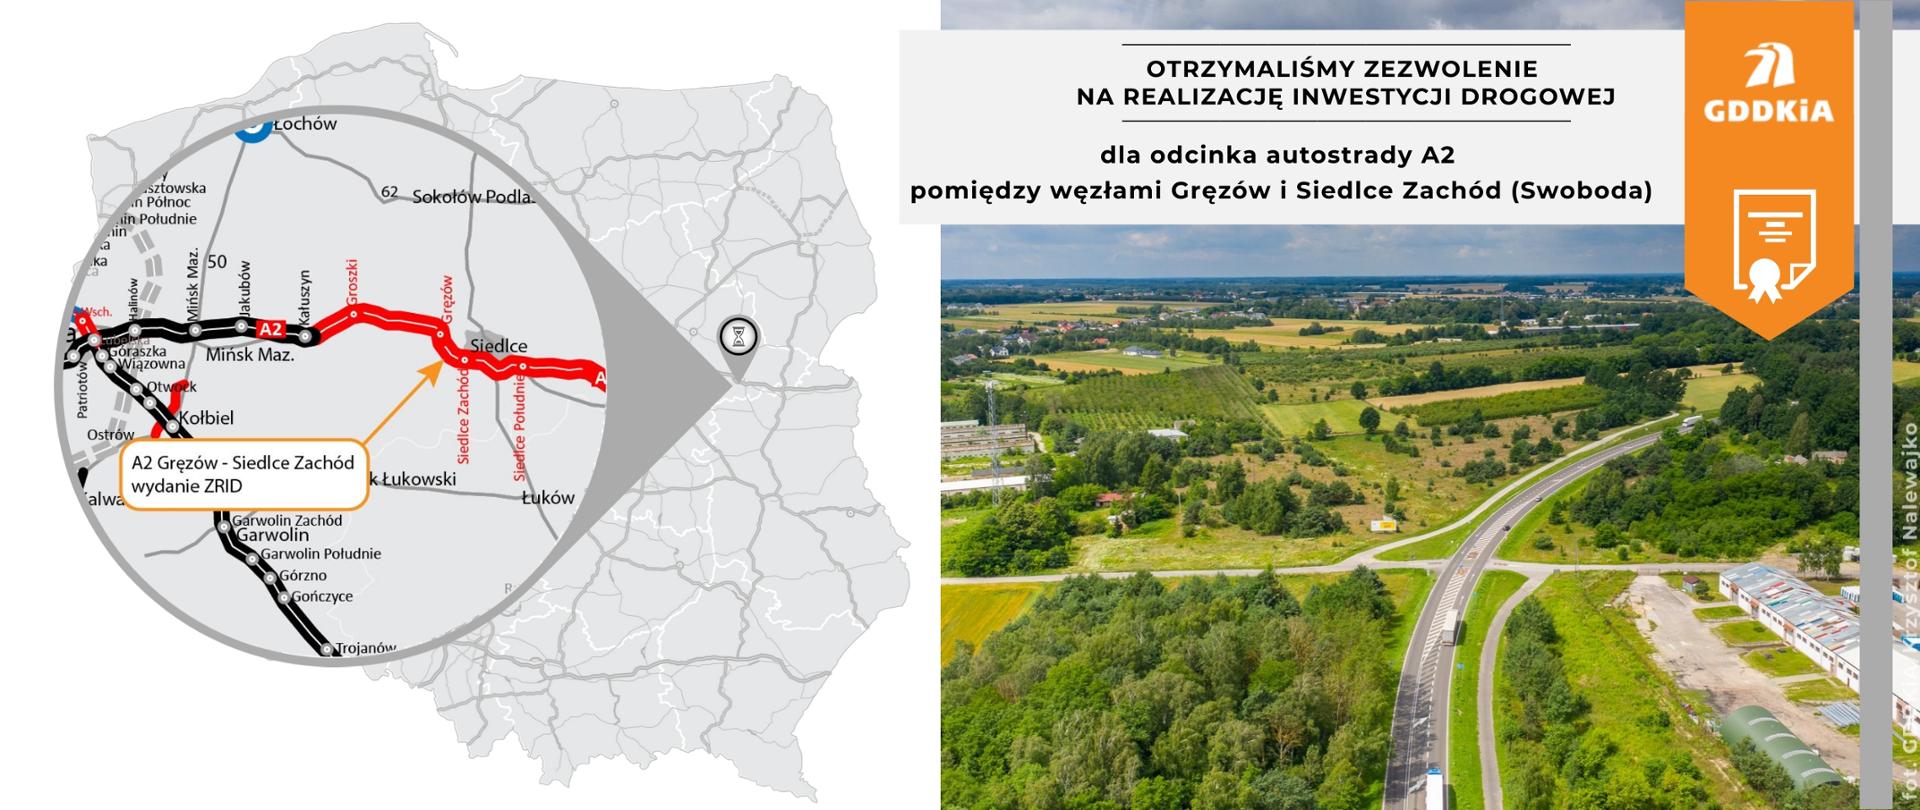 Infografika - A2 Gręzów - Siedlce Zachód - wydanie ZRID